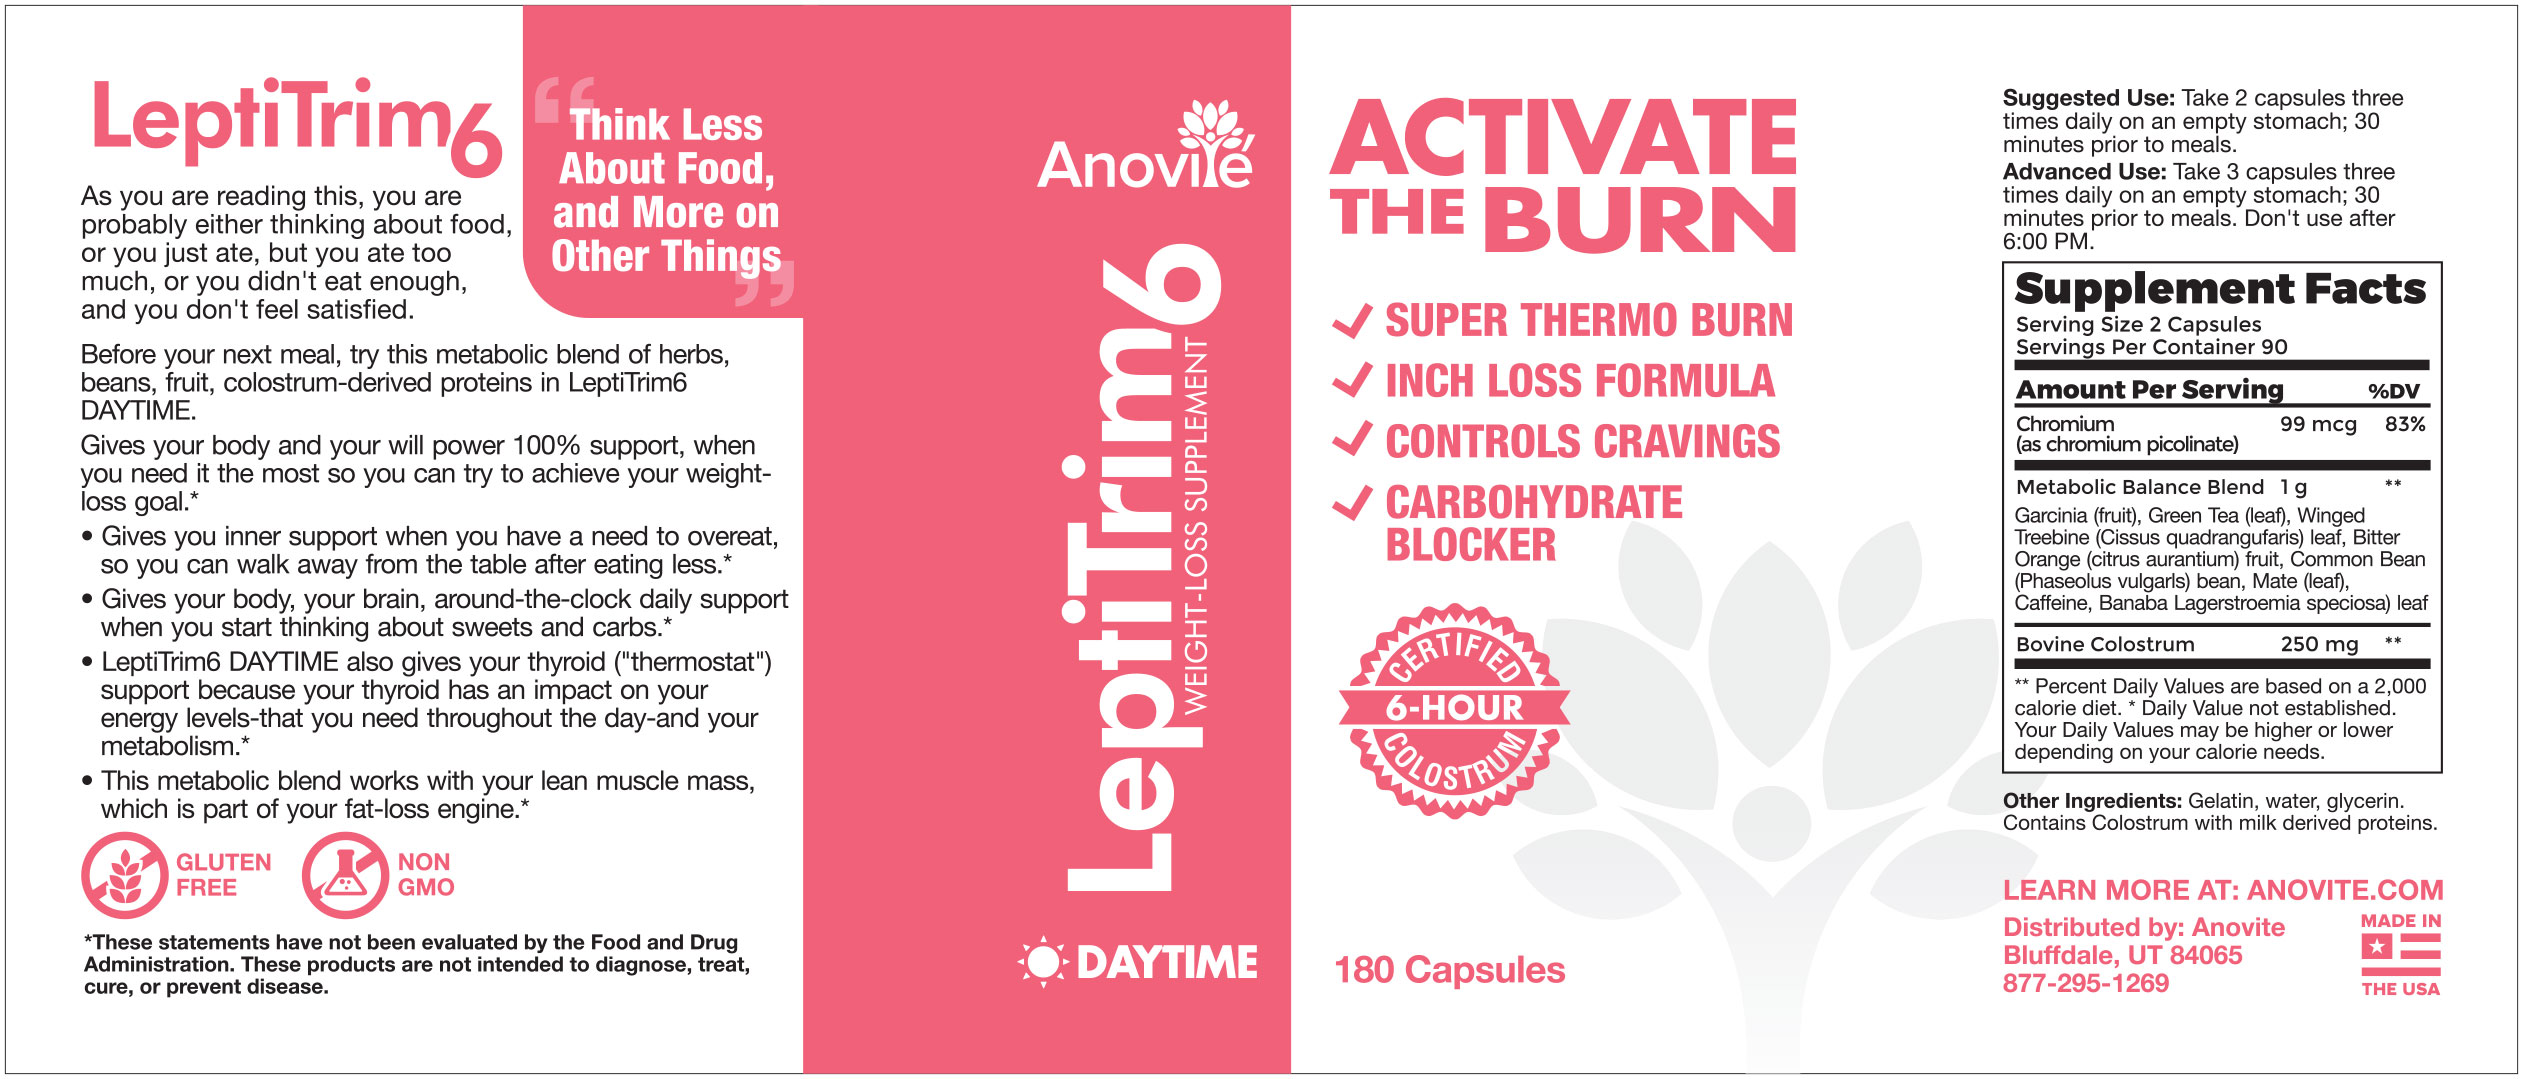 Anovite-LeptiTrim6-daytime